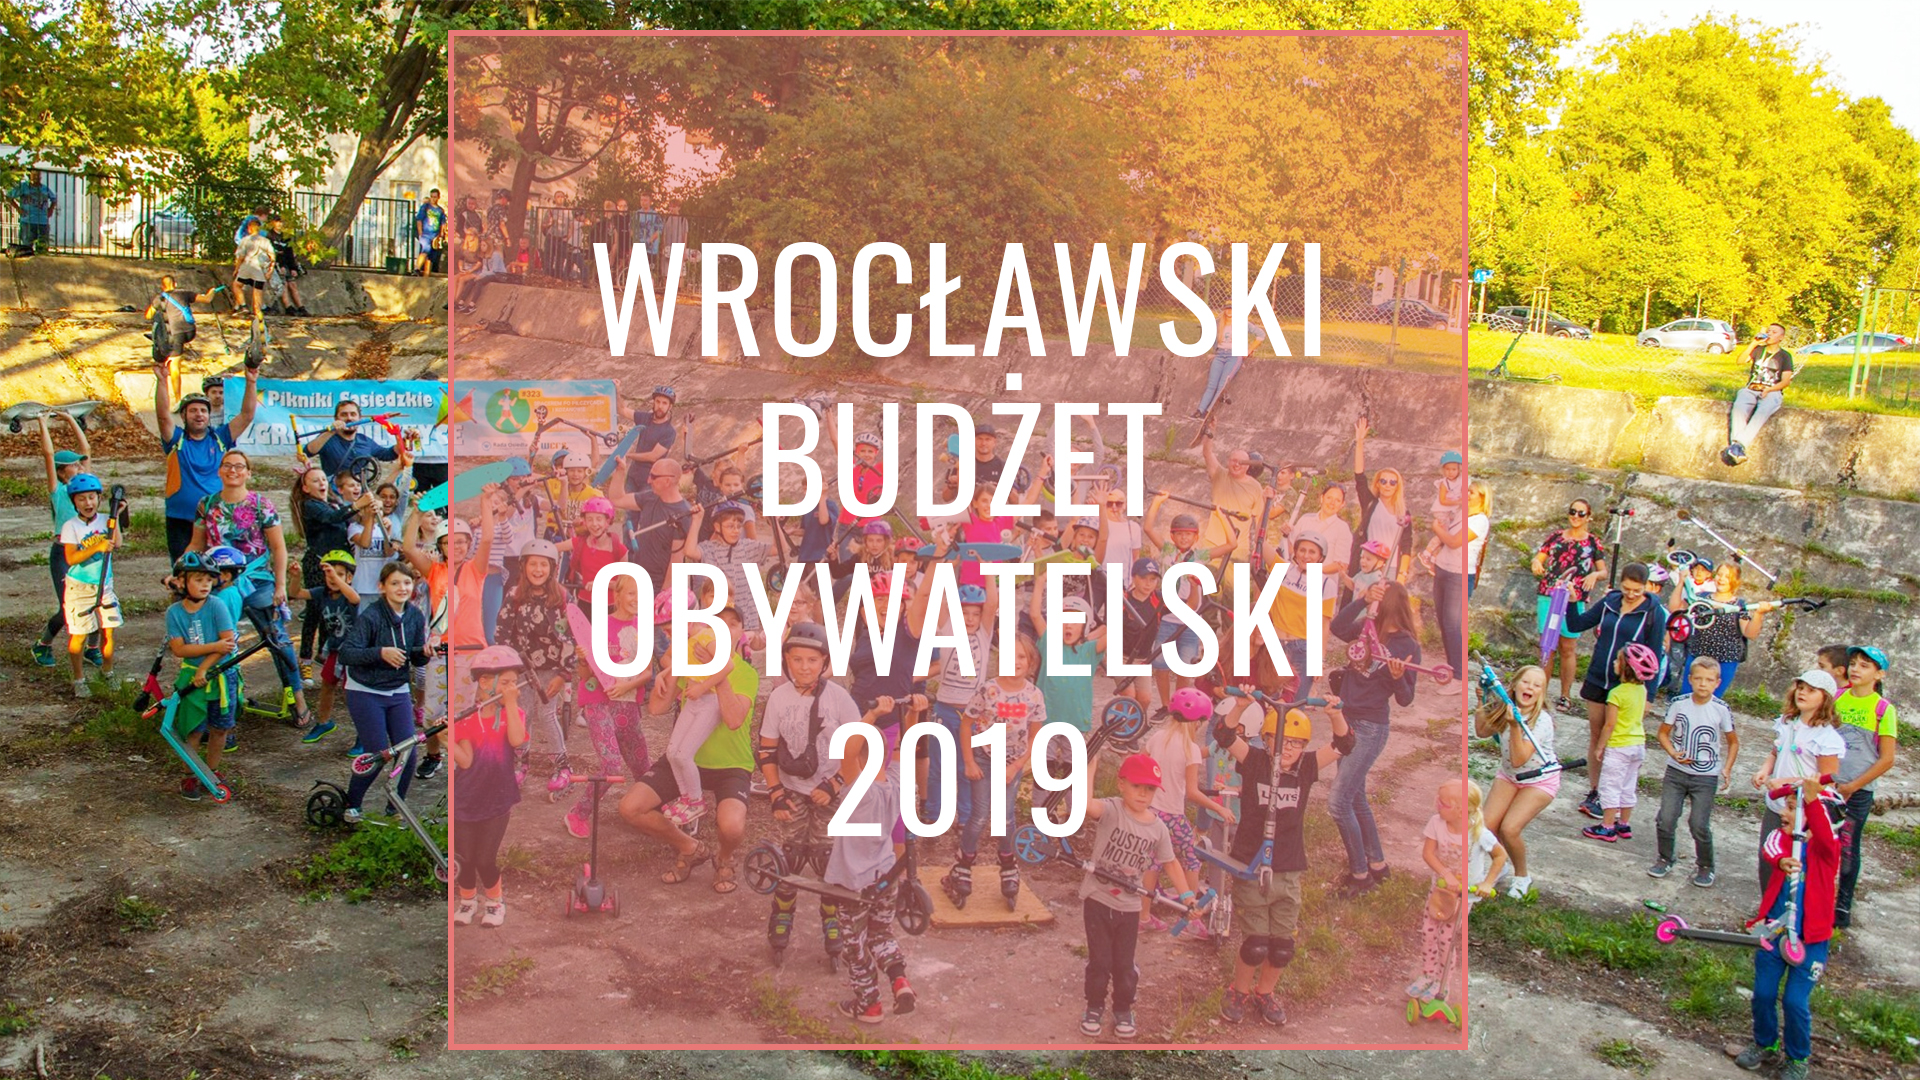 Wrocławski Budżet Obywatelski 2019